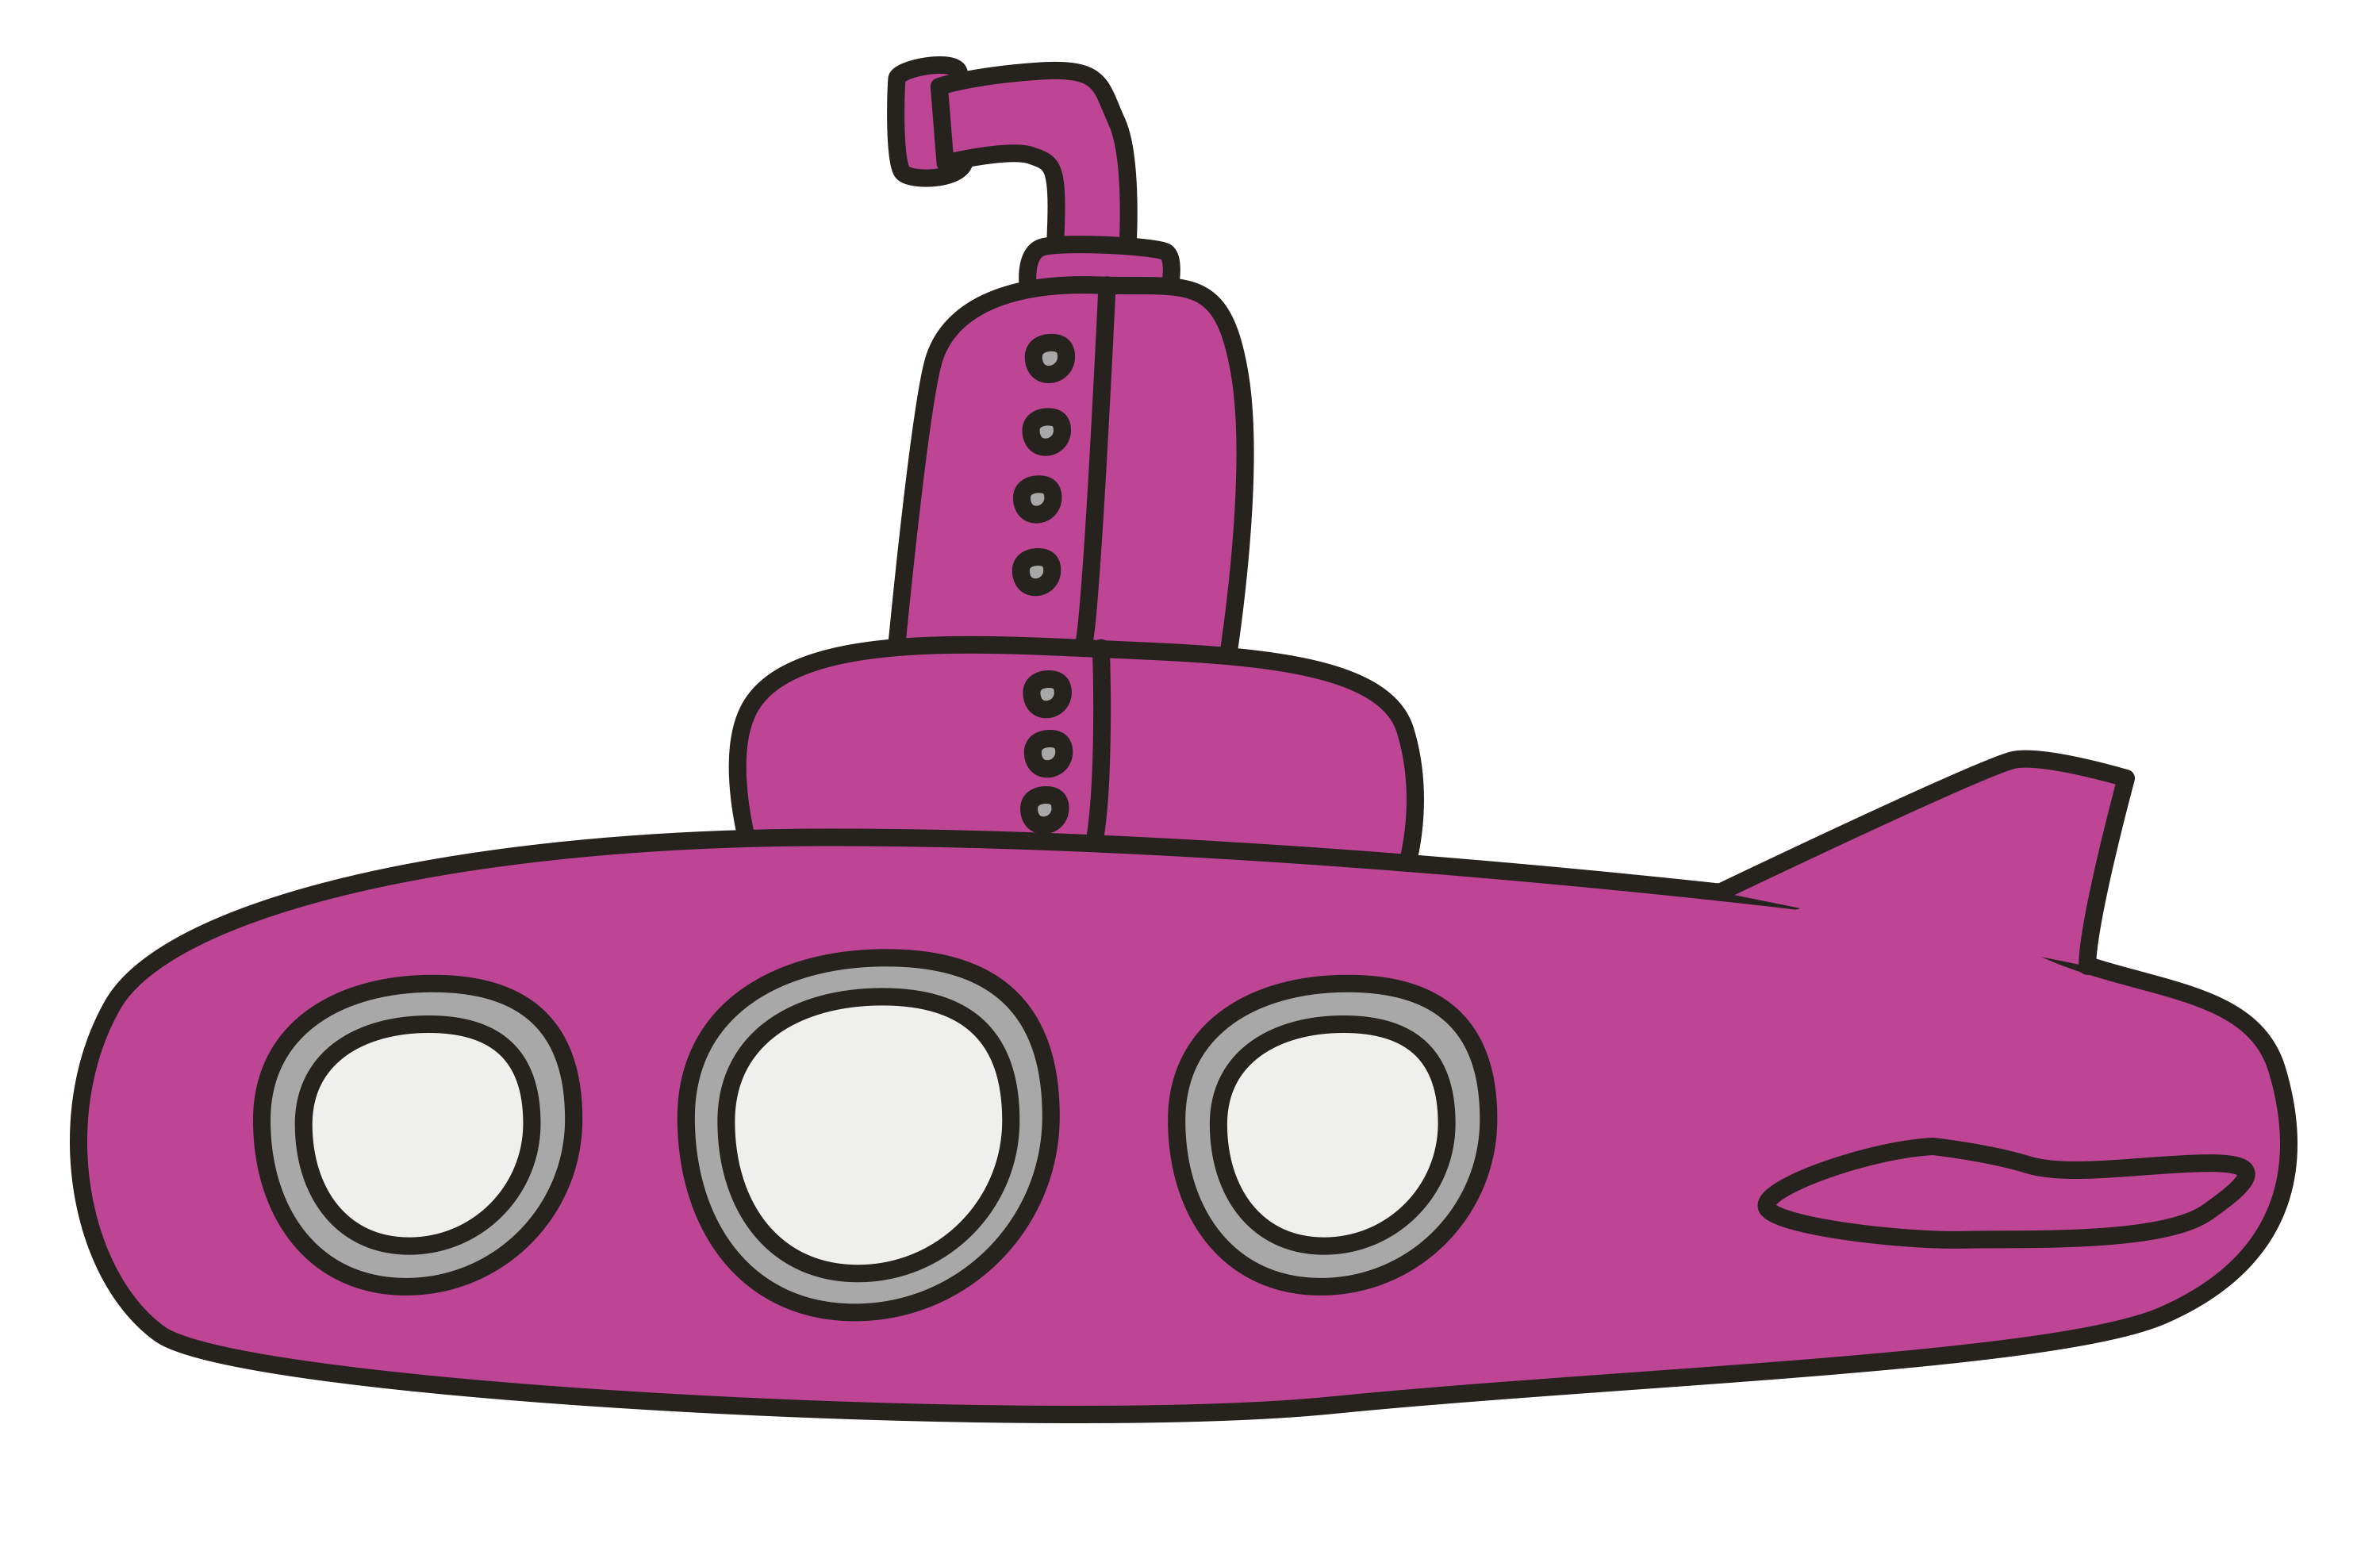 Submarine clipart simple. 